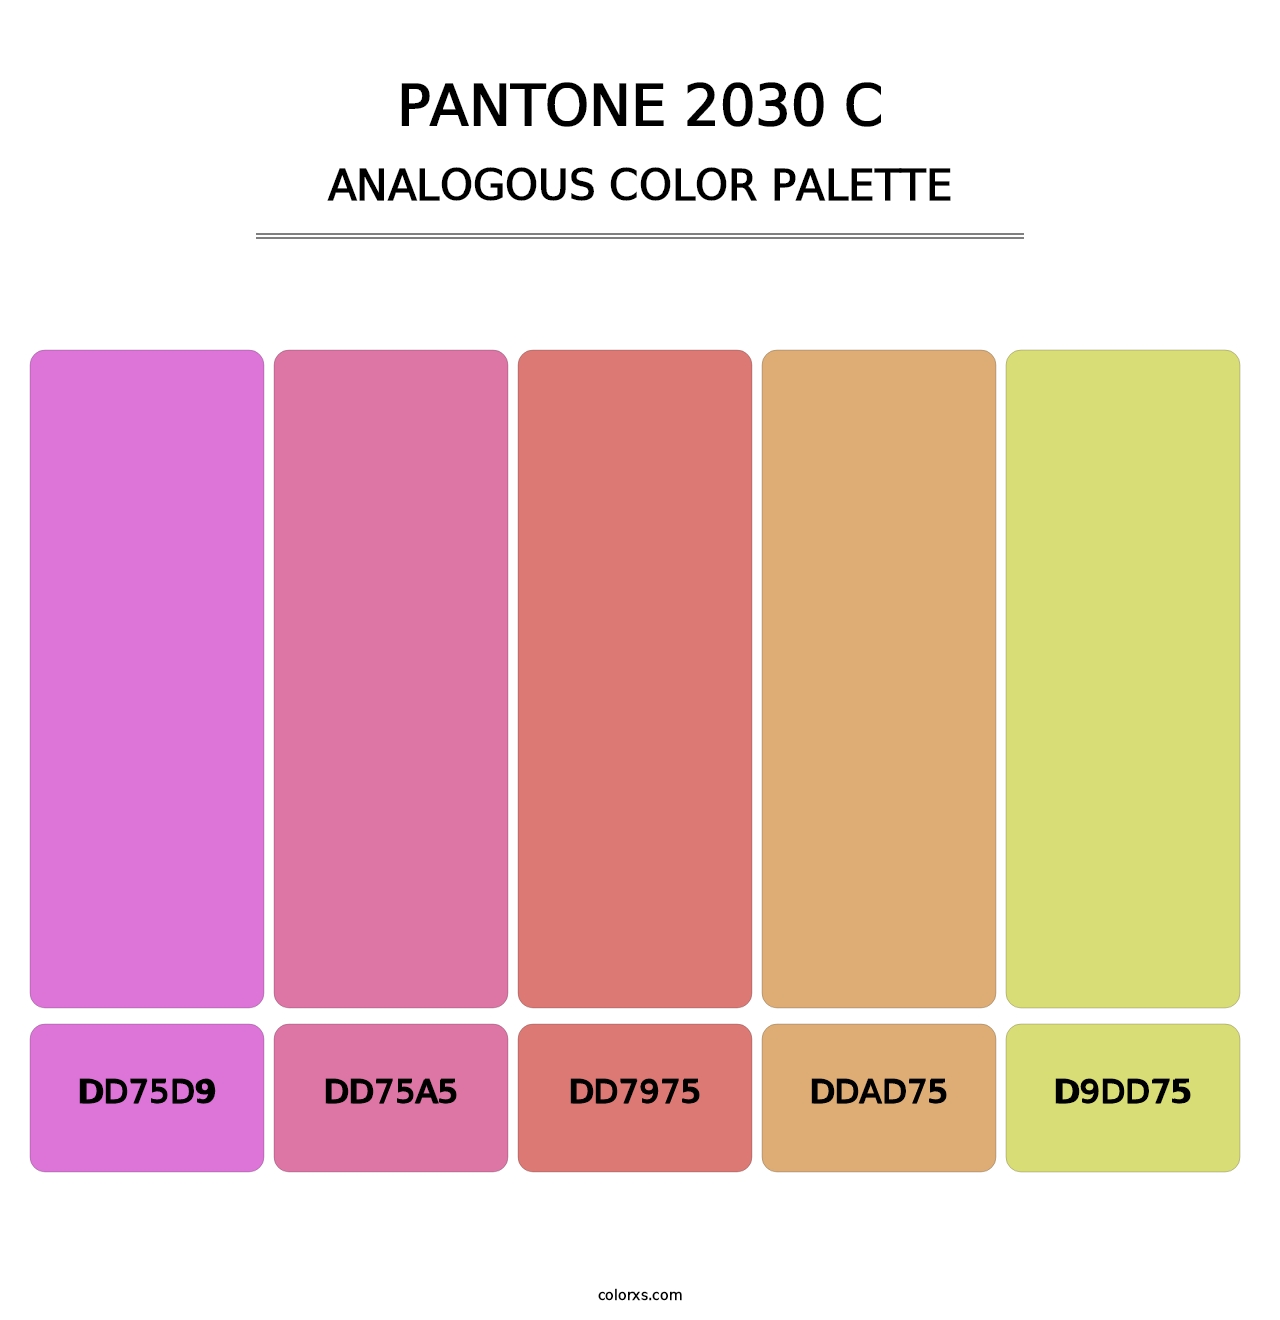 PANTONE 2030 C - Analogous Color Palette